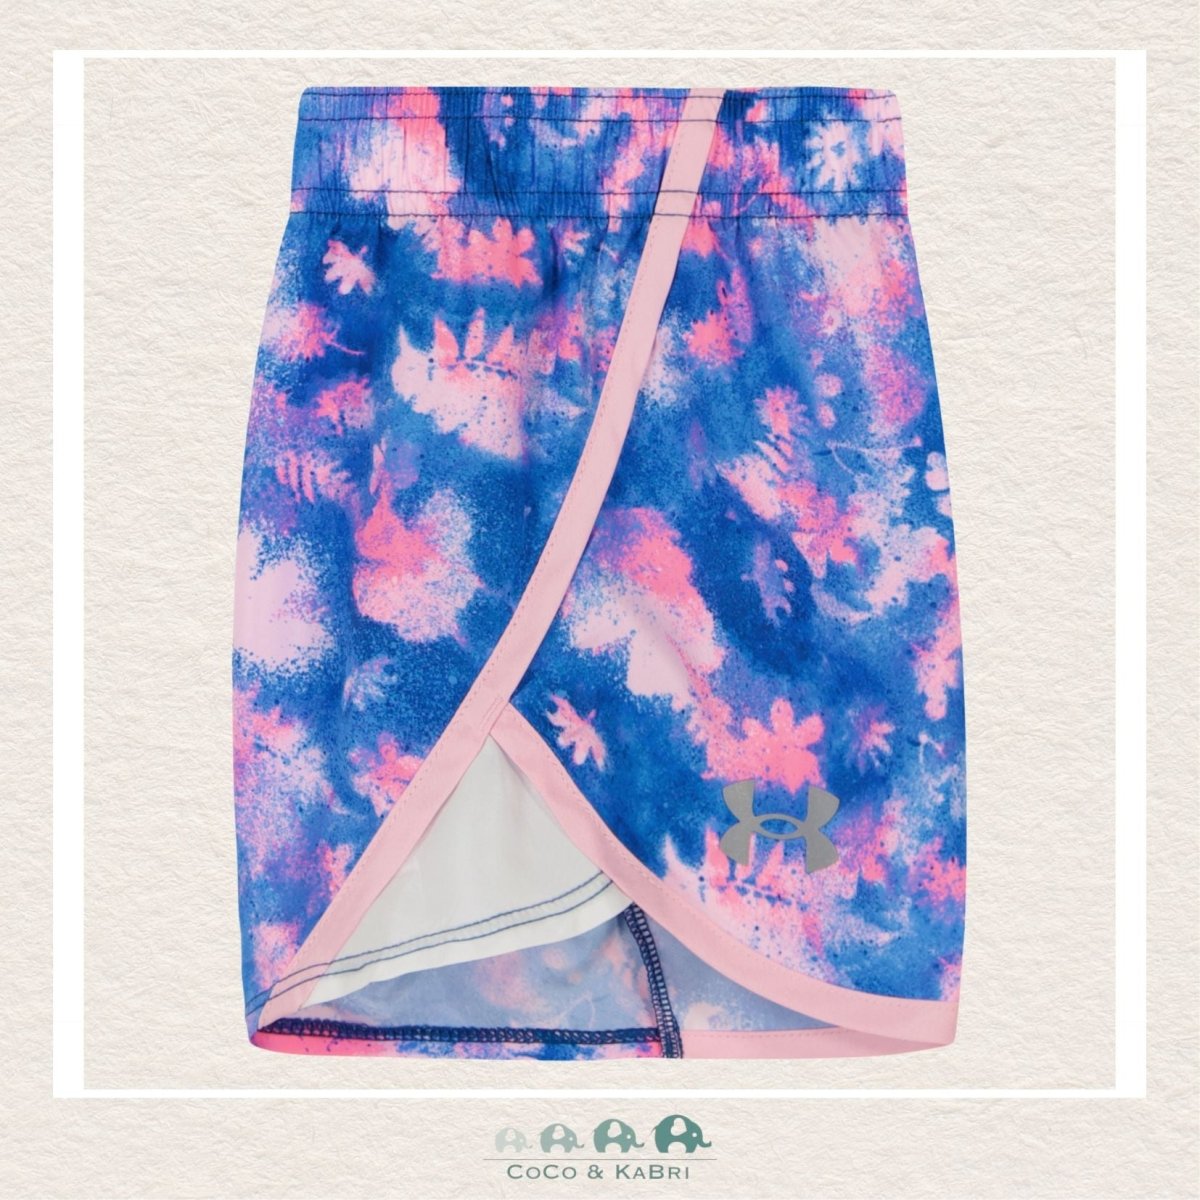 Under Armour Girls: Printed Tshirt & Short Set - Pink, CoCo & KaBri Children's Boutique